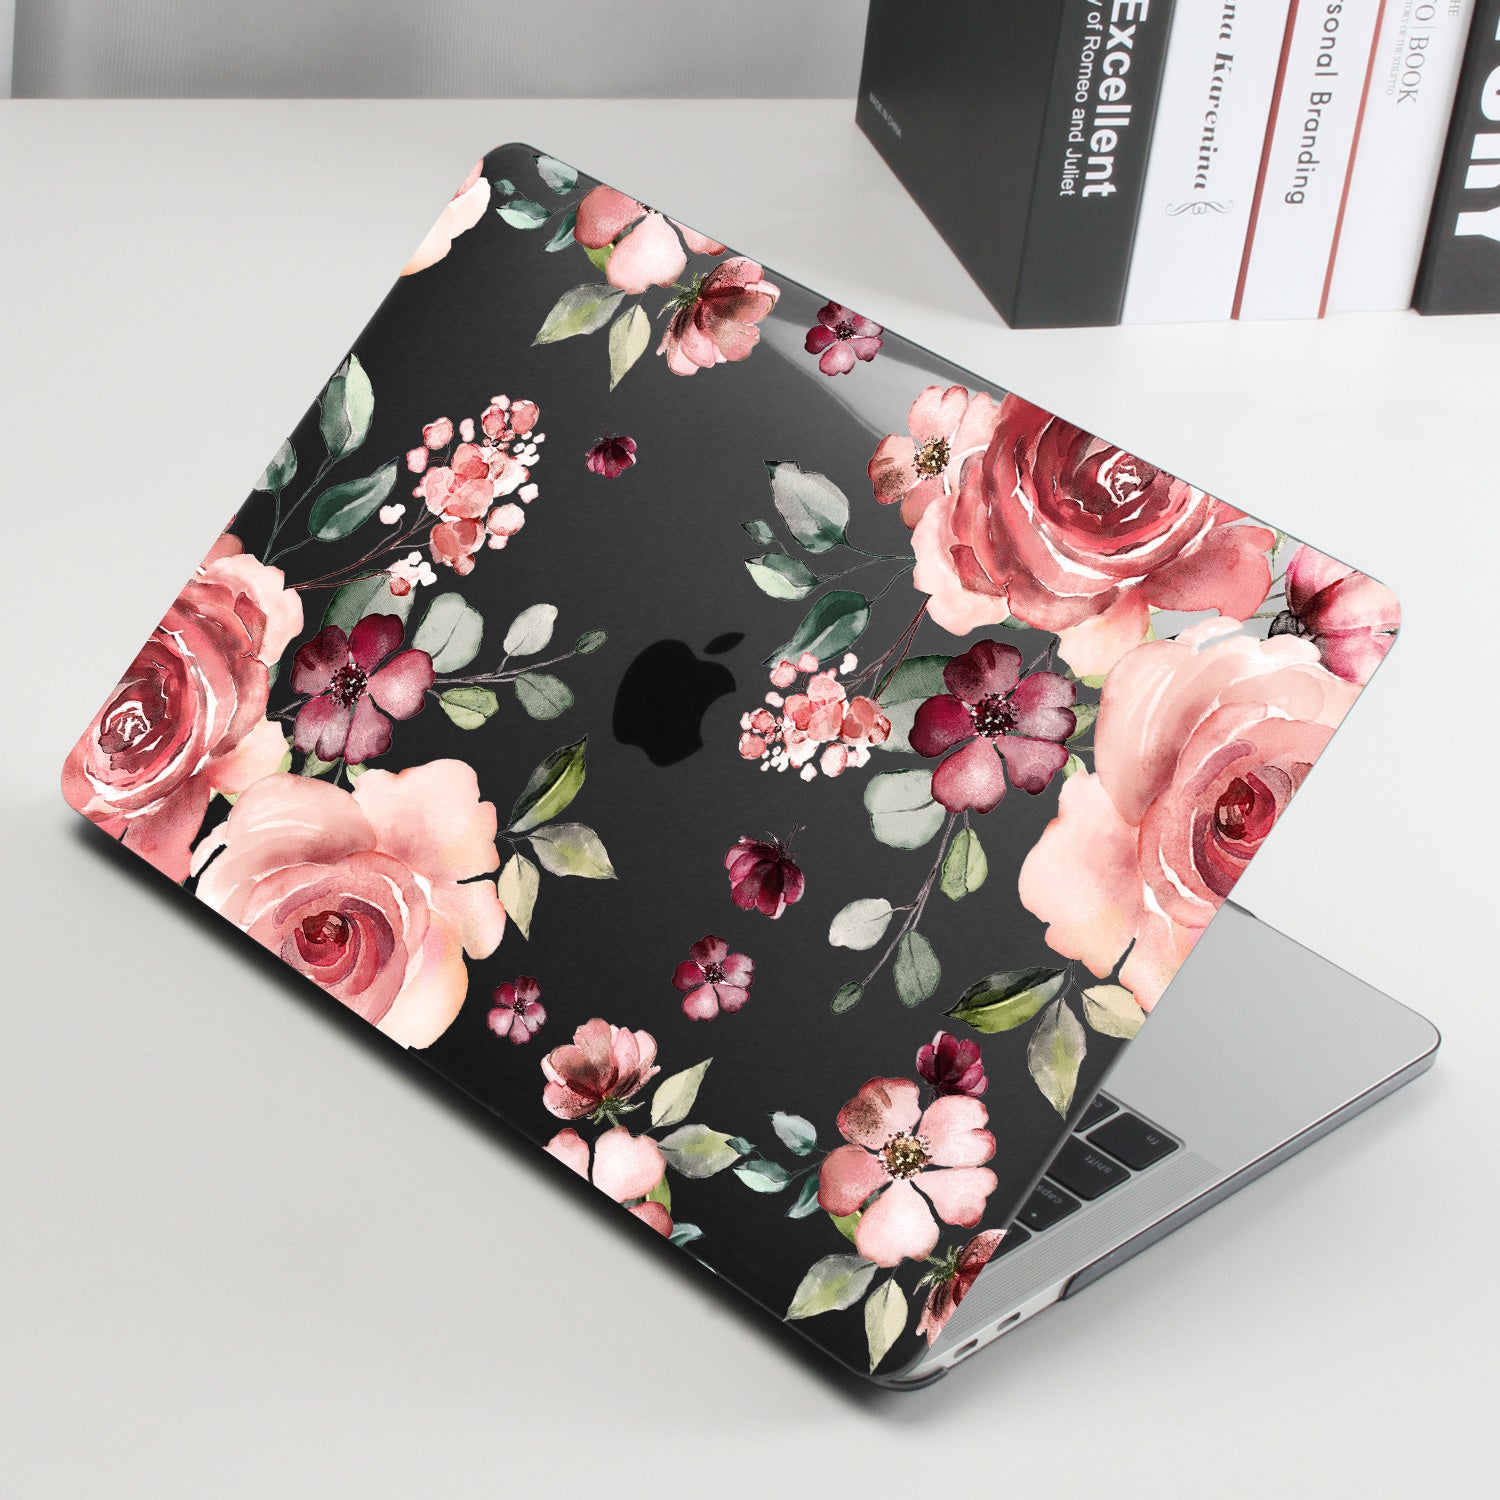 Begonia flowers Macbook case